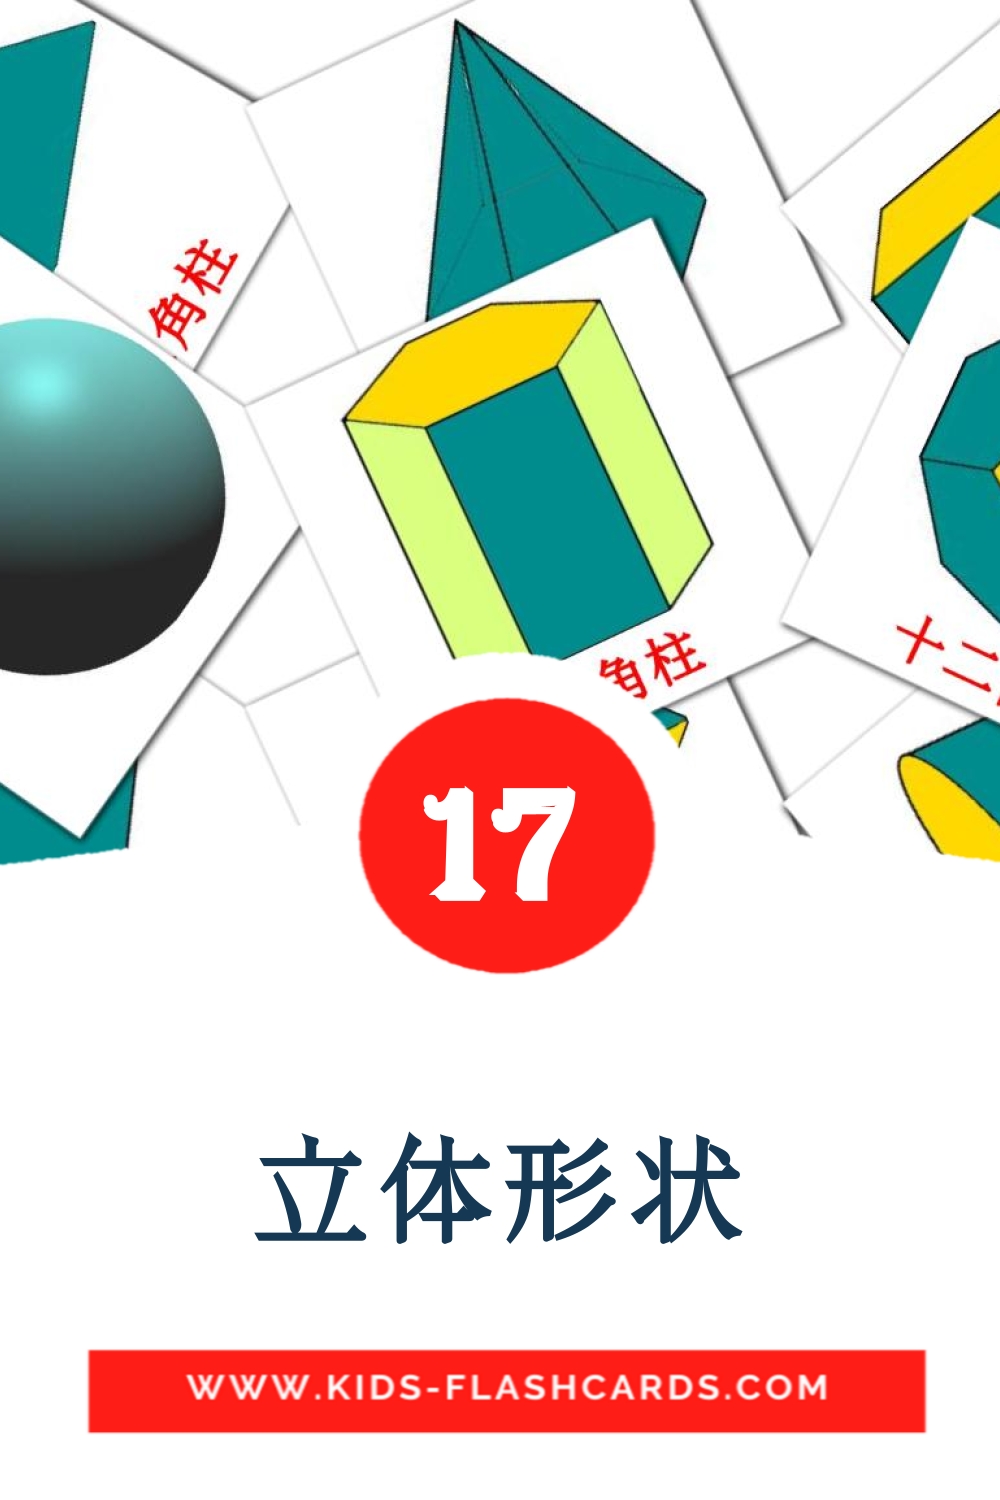 立体形状 на китайский(Традиционный) для Детского Сада (17 карточек)